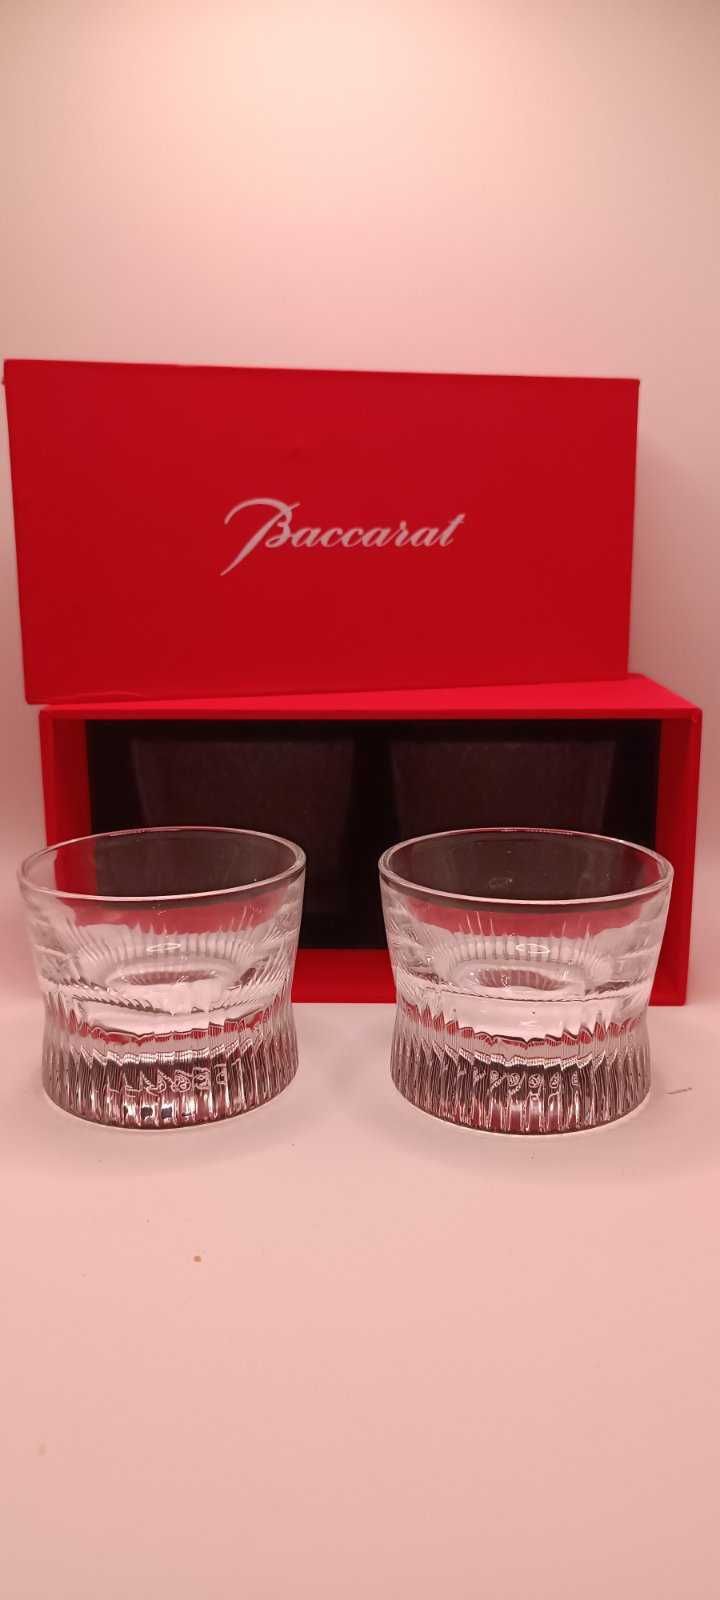 ПРОДАВАМ.: Подаръчен комплект чаши за уиски Baccarat